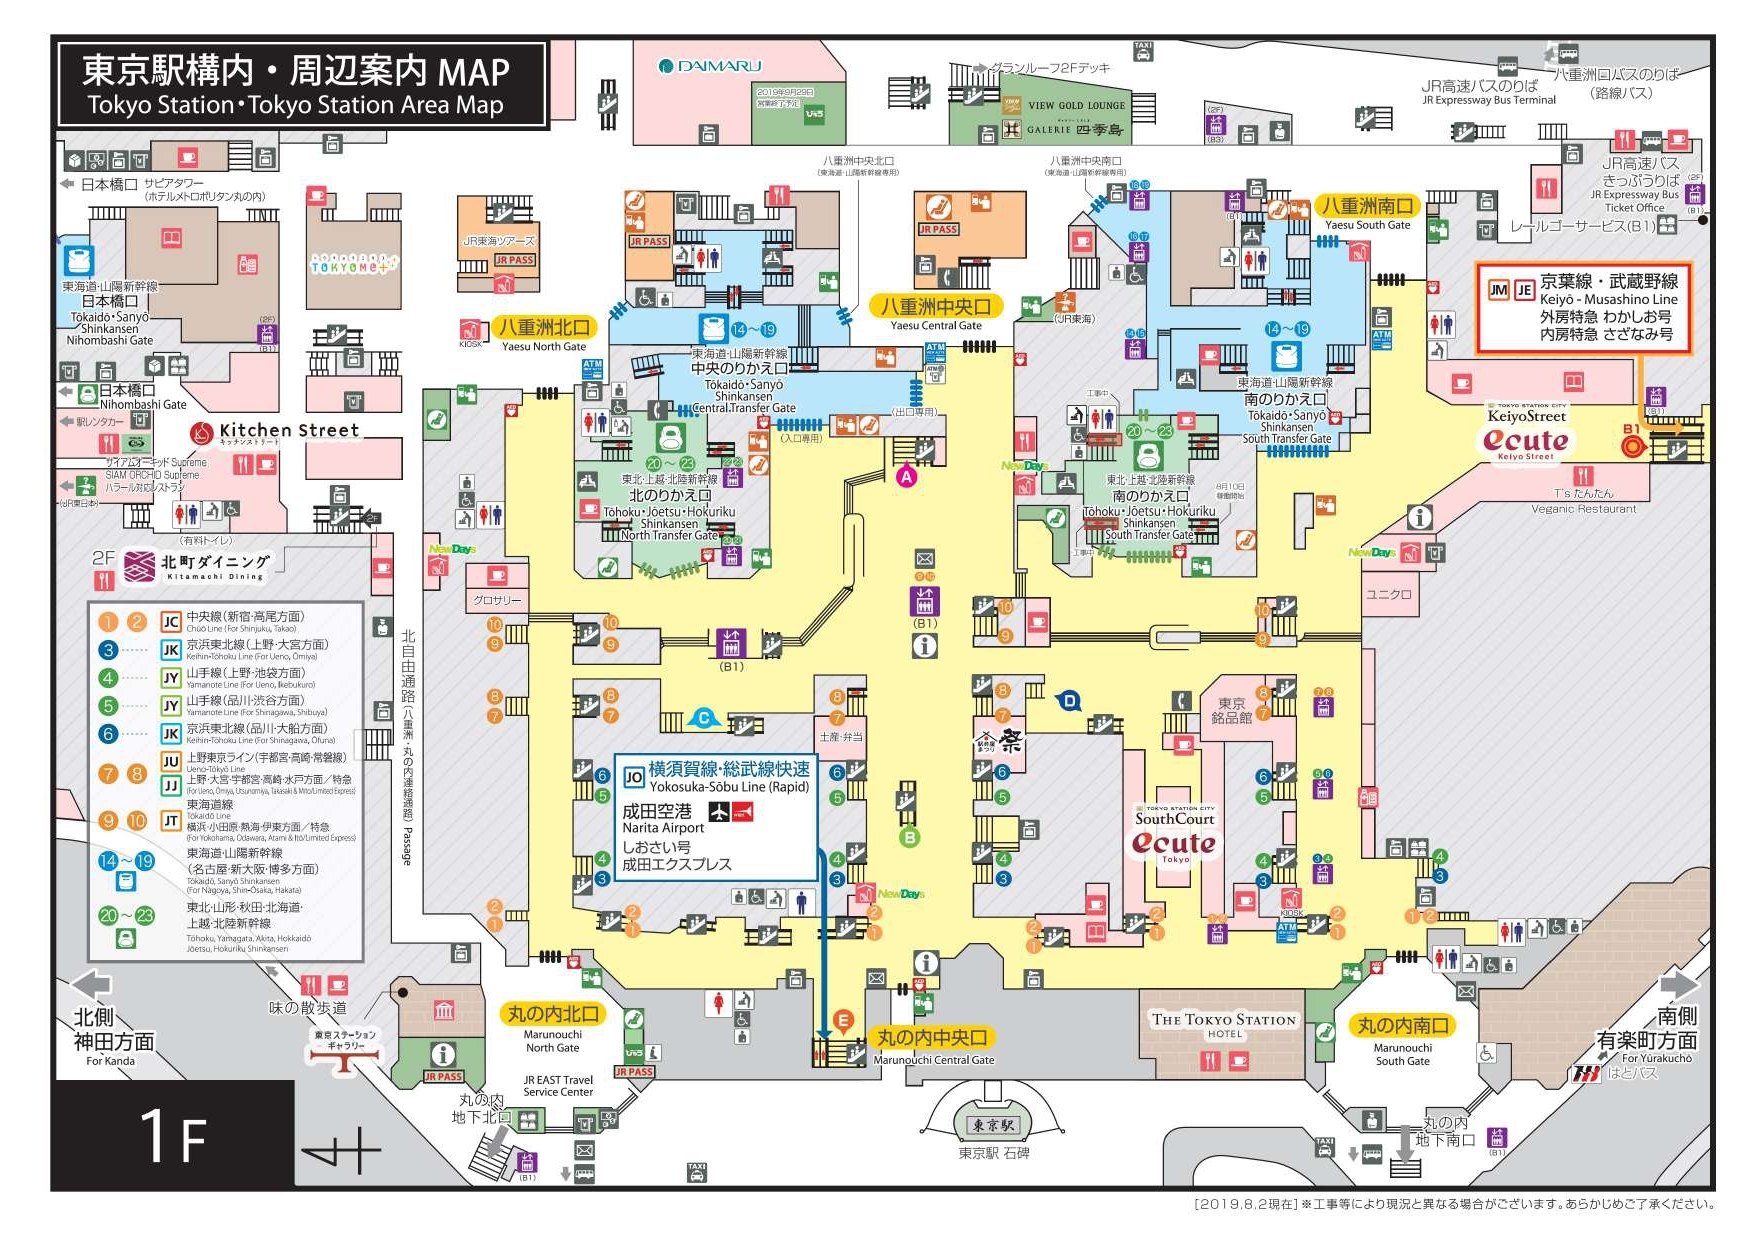 東京駅の構内図 わかりやすいシンプル版 2020年最新